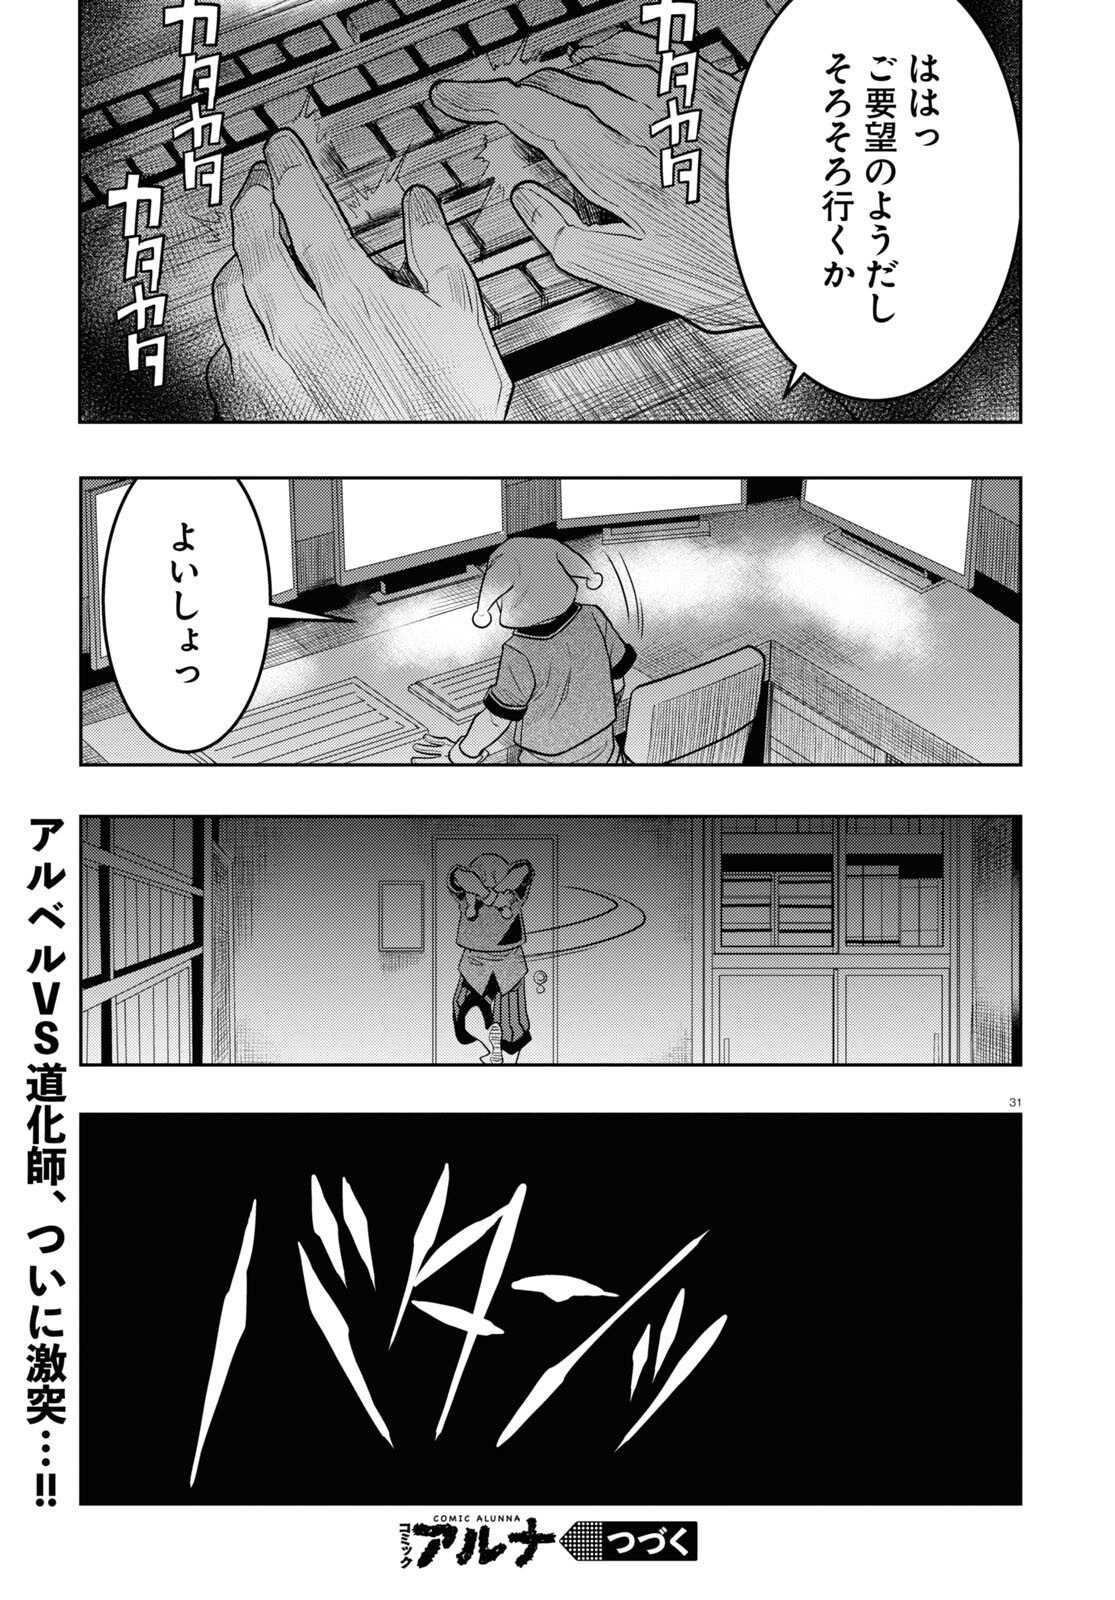 Nichijou Lock - Chapter 31 - Page 31